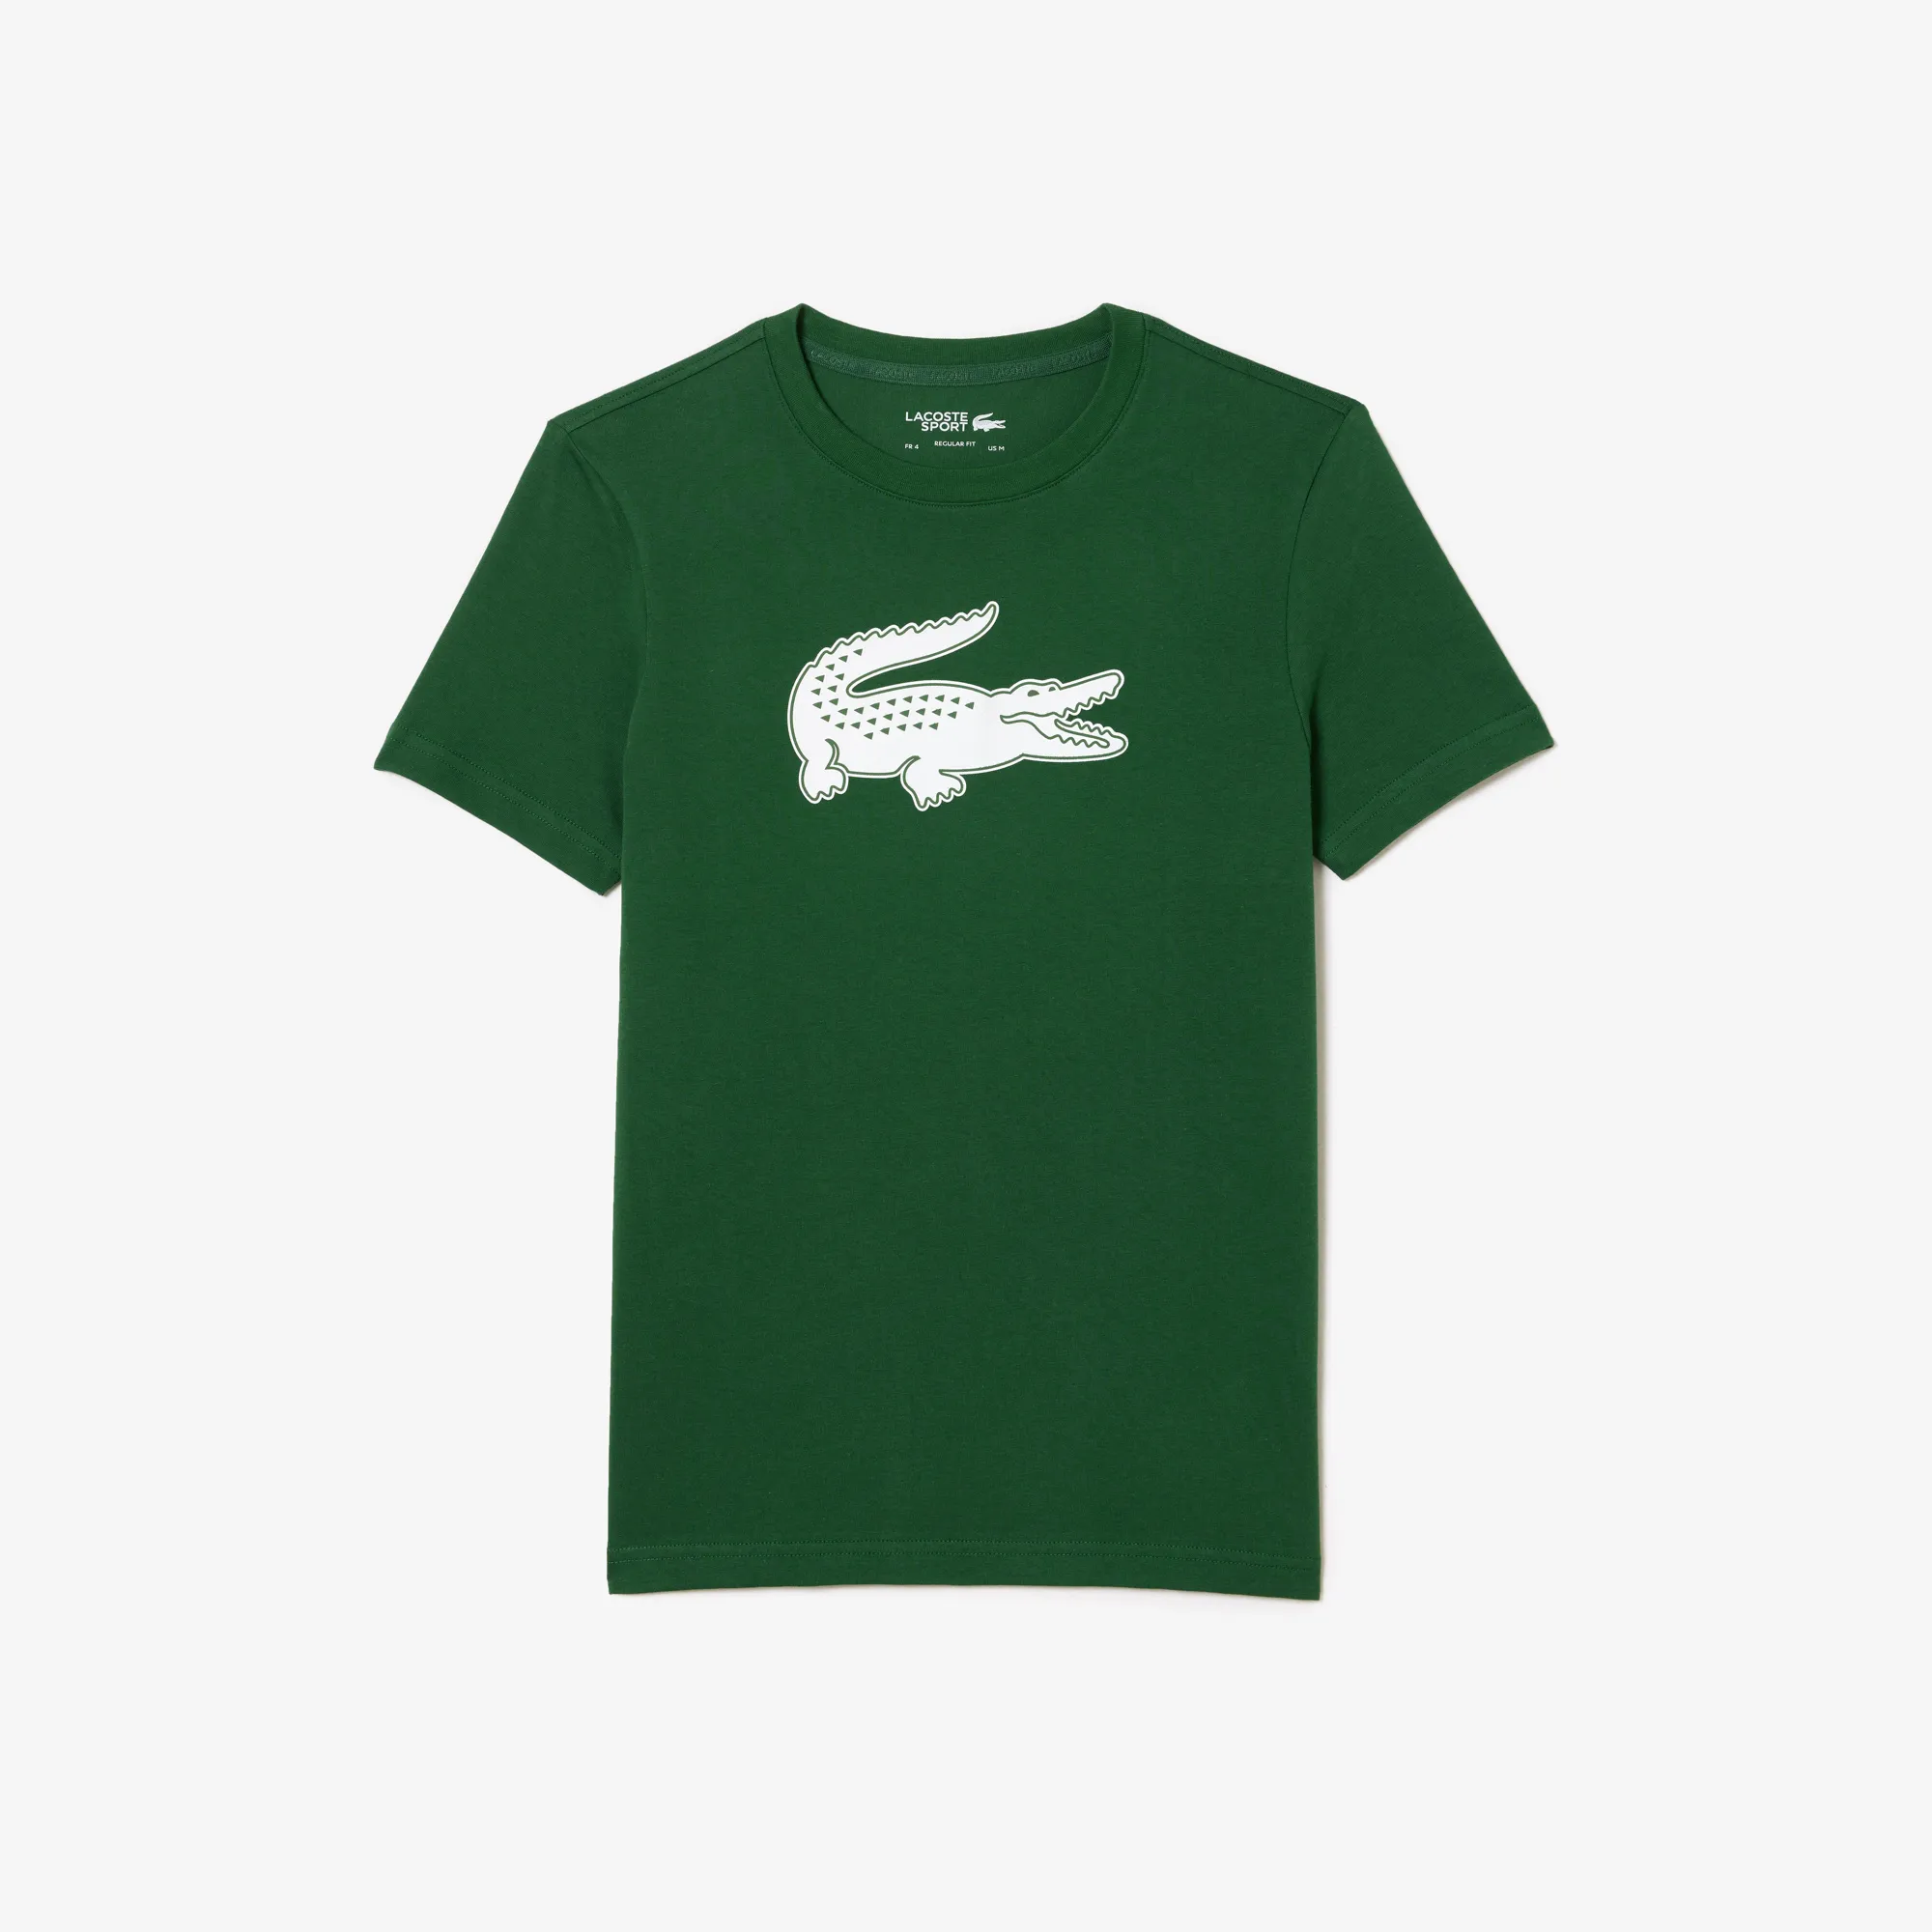 Men’s Lacoste SPORT 3D Print Crocodile Breathable Jersey T-shirt